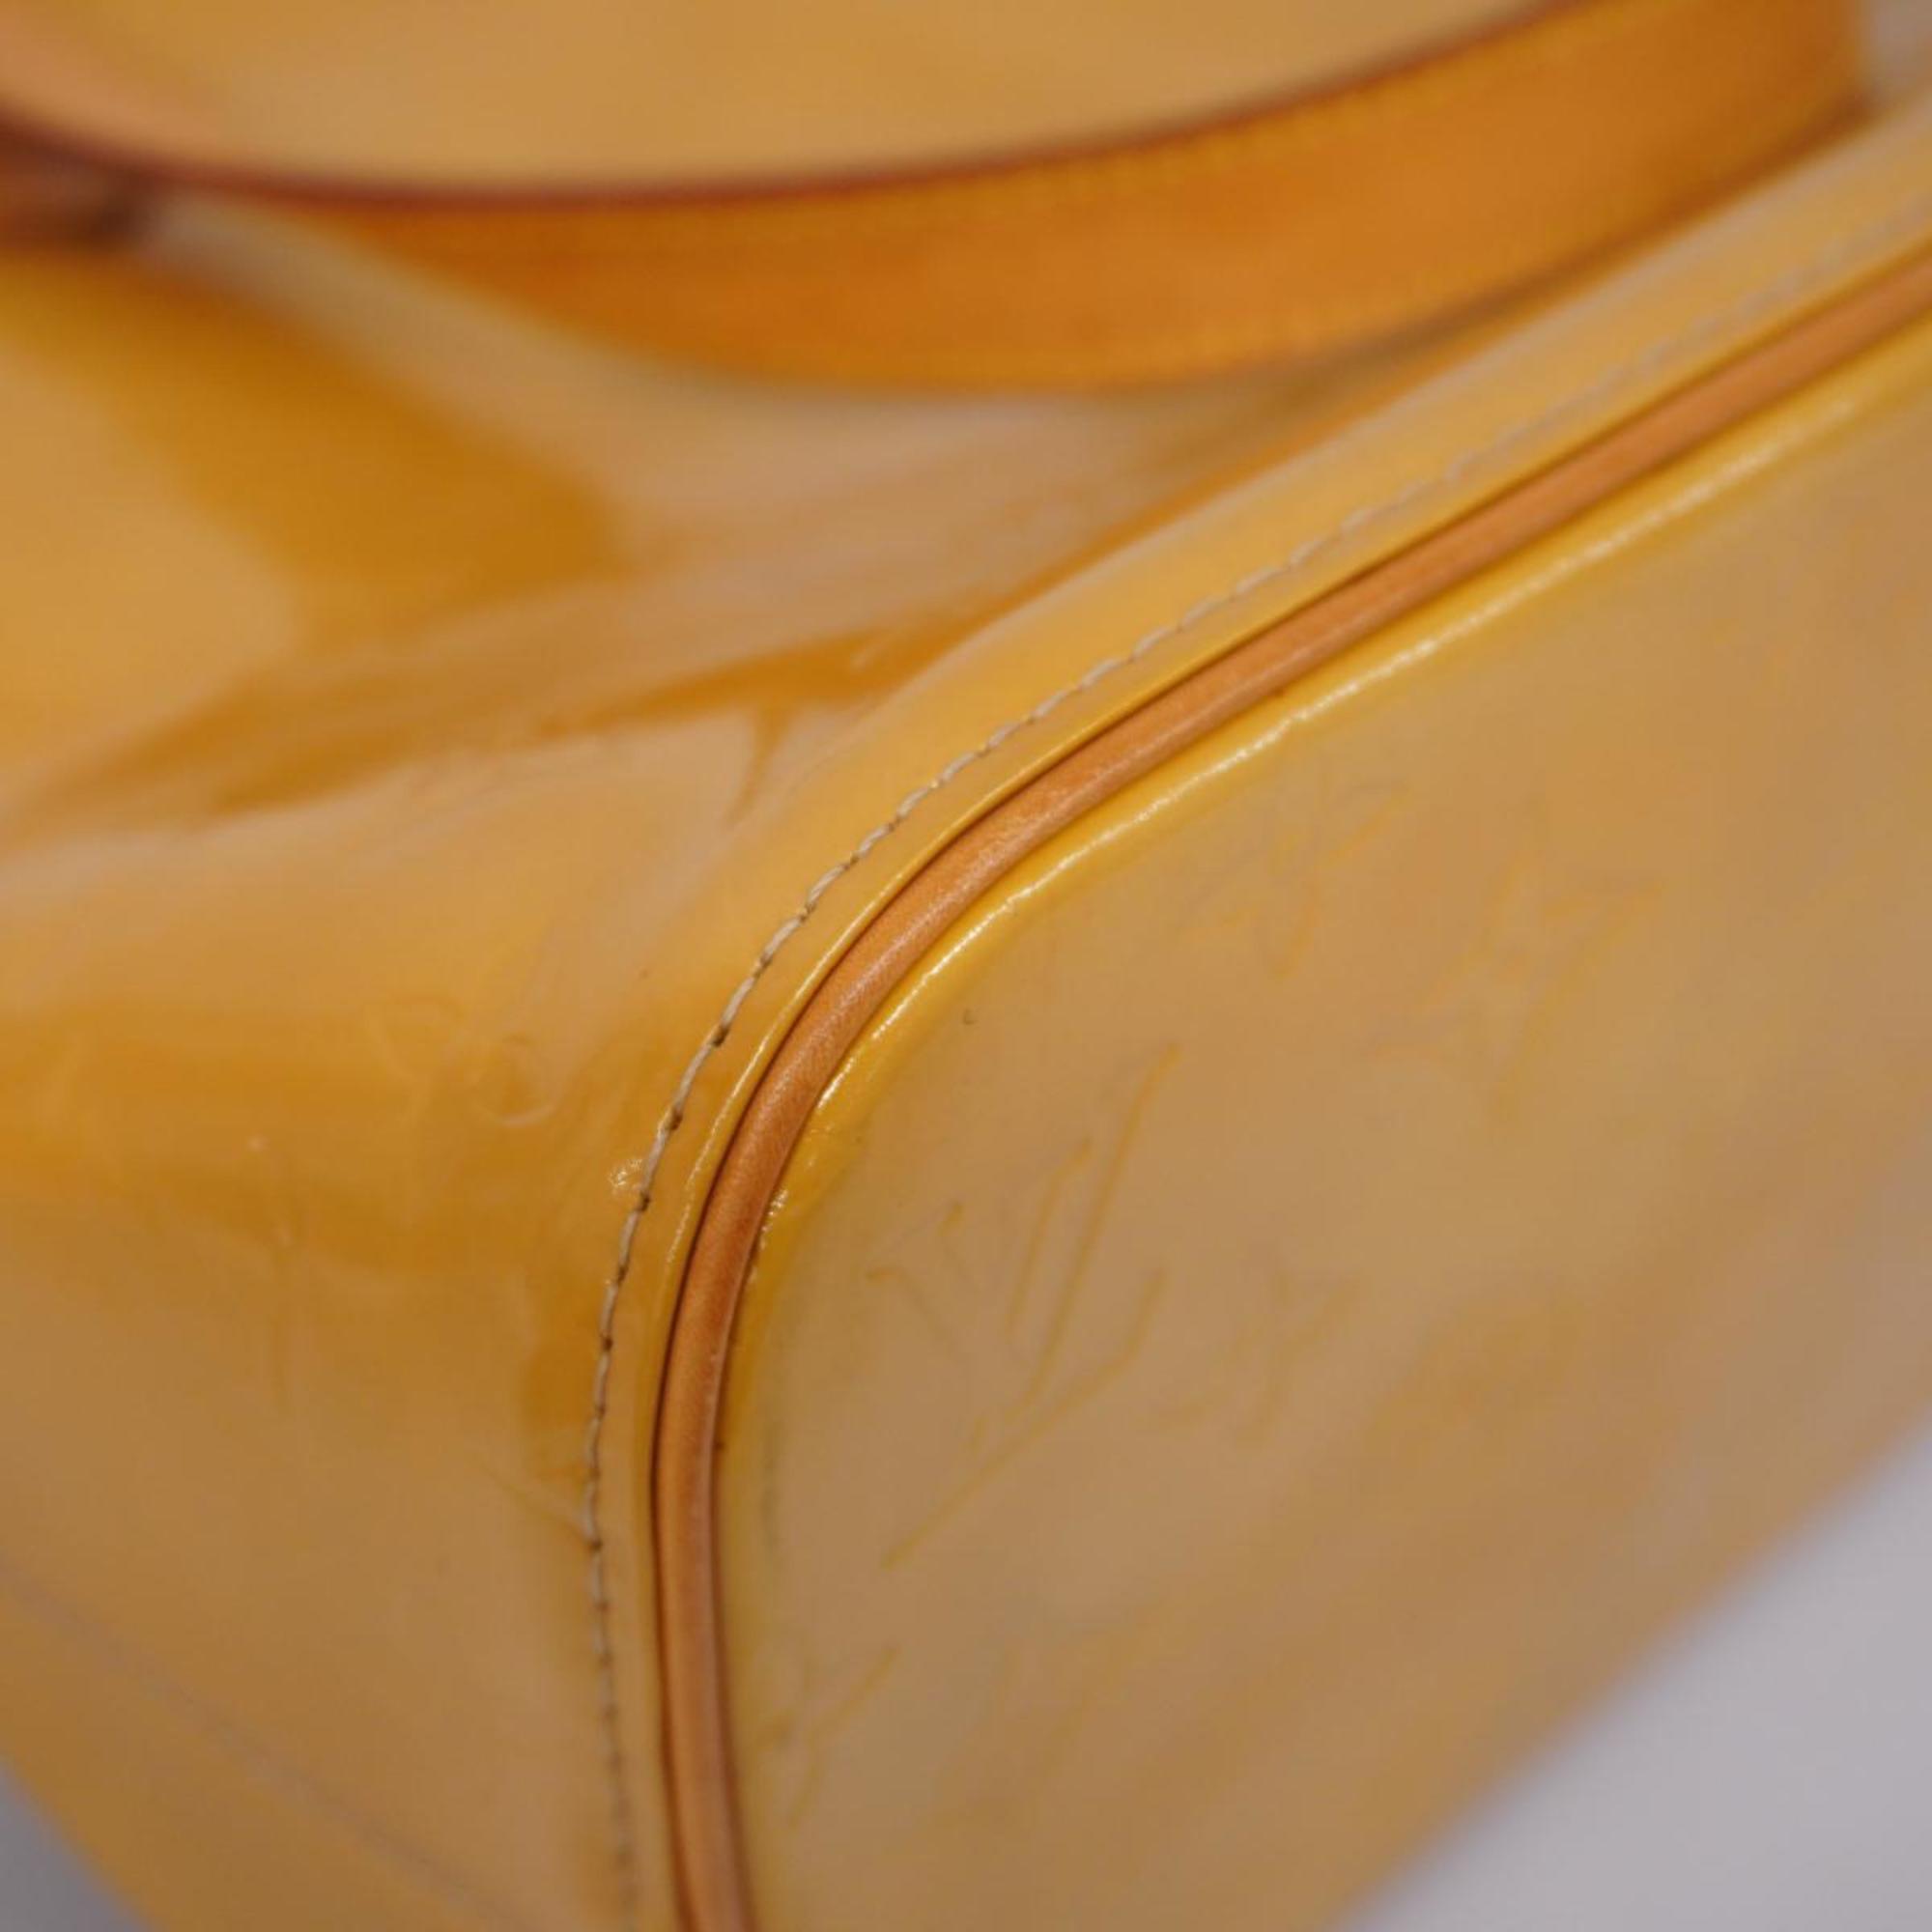 Louis Vuitton Tote Bag Vernis Houston M91004 Beige Women's